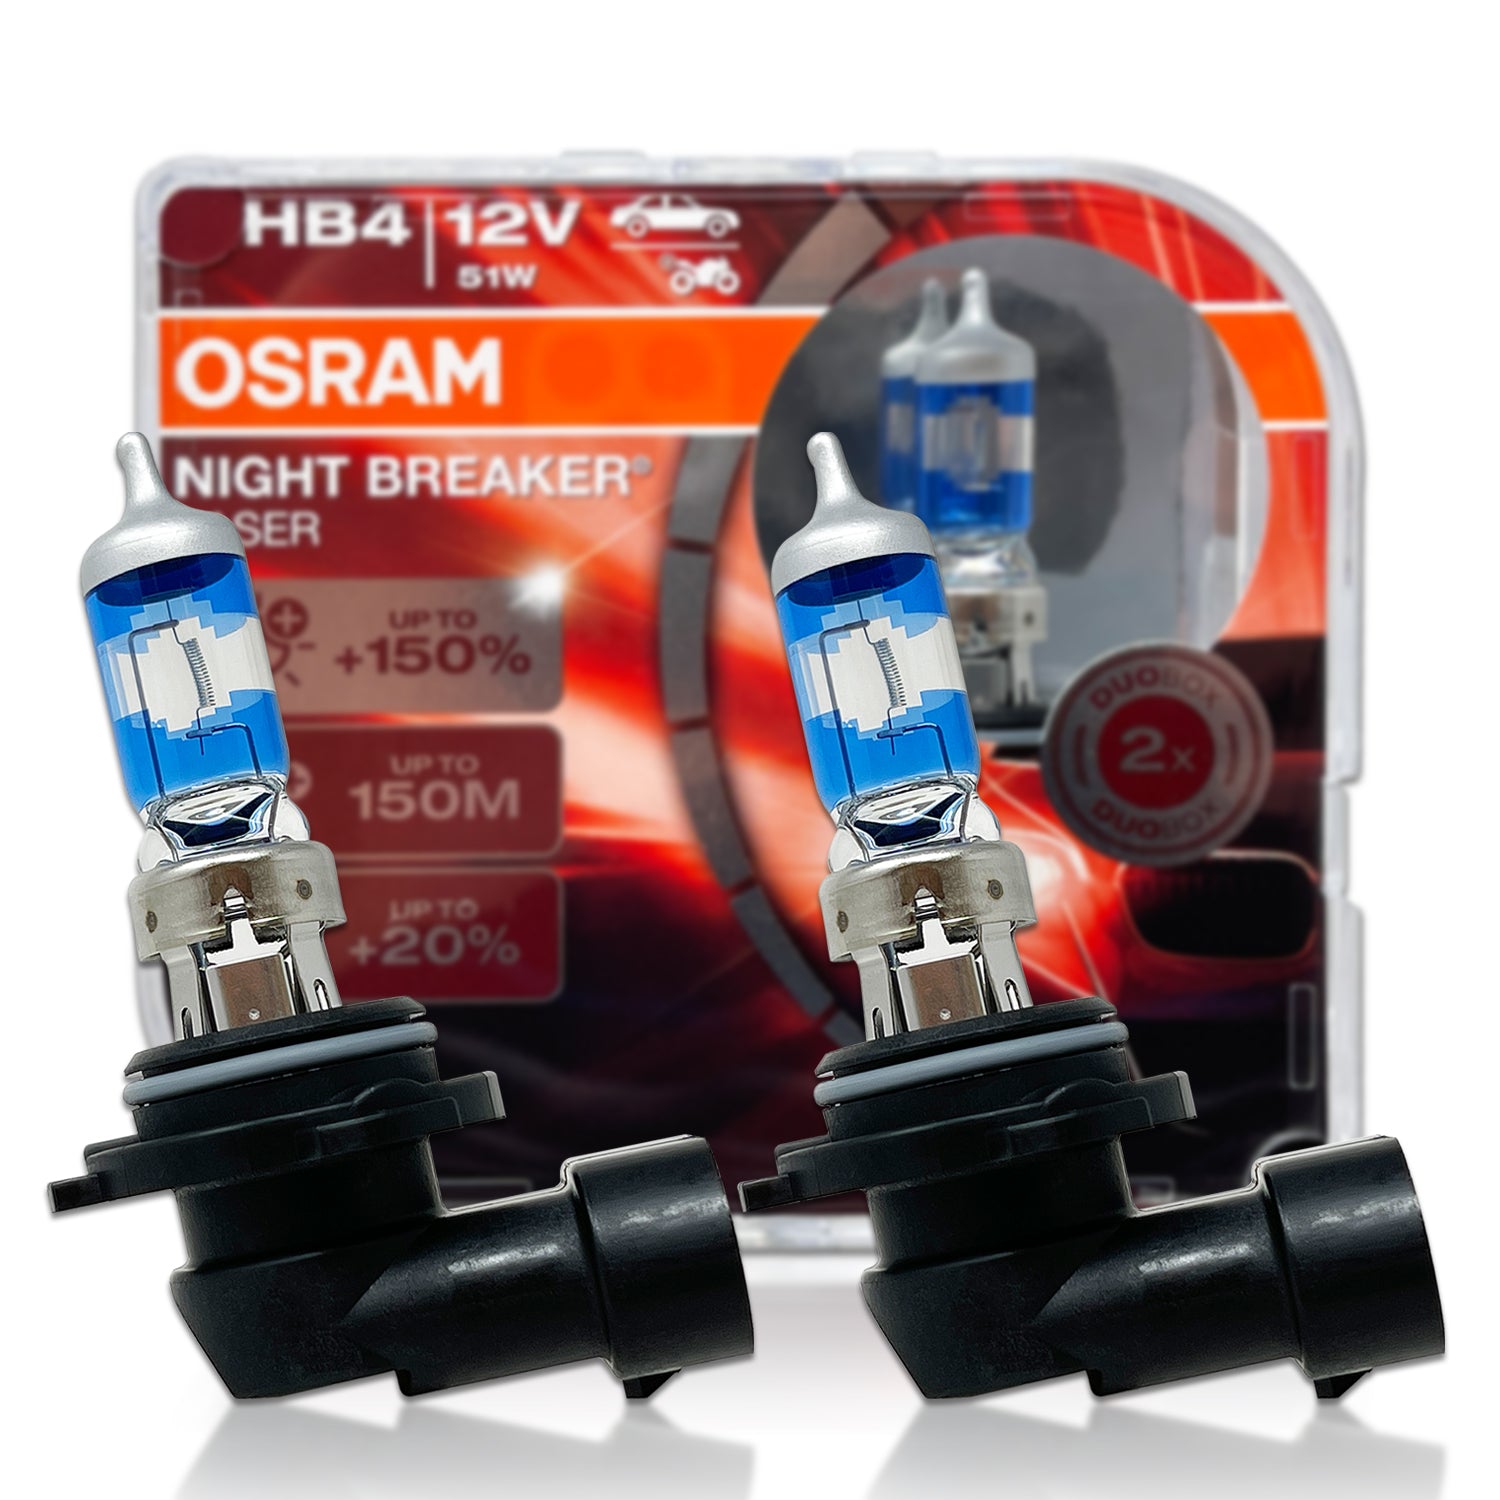 H4/9003/HB2: Osram +150% Night Breaker Laser Halogen Bulb 64193NL